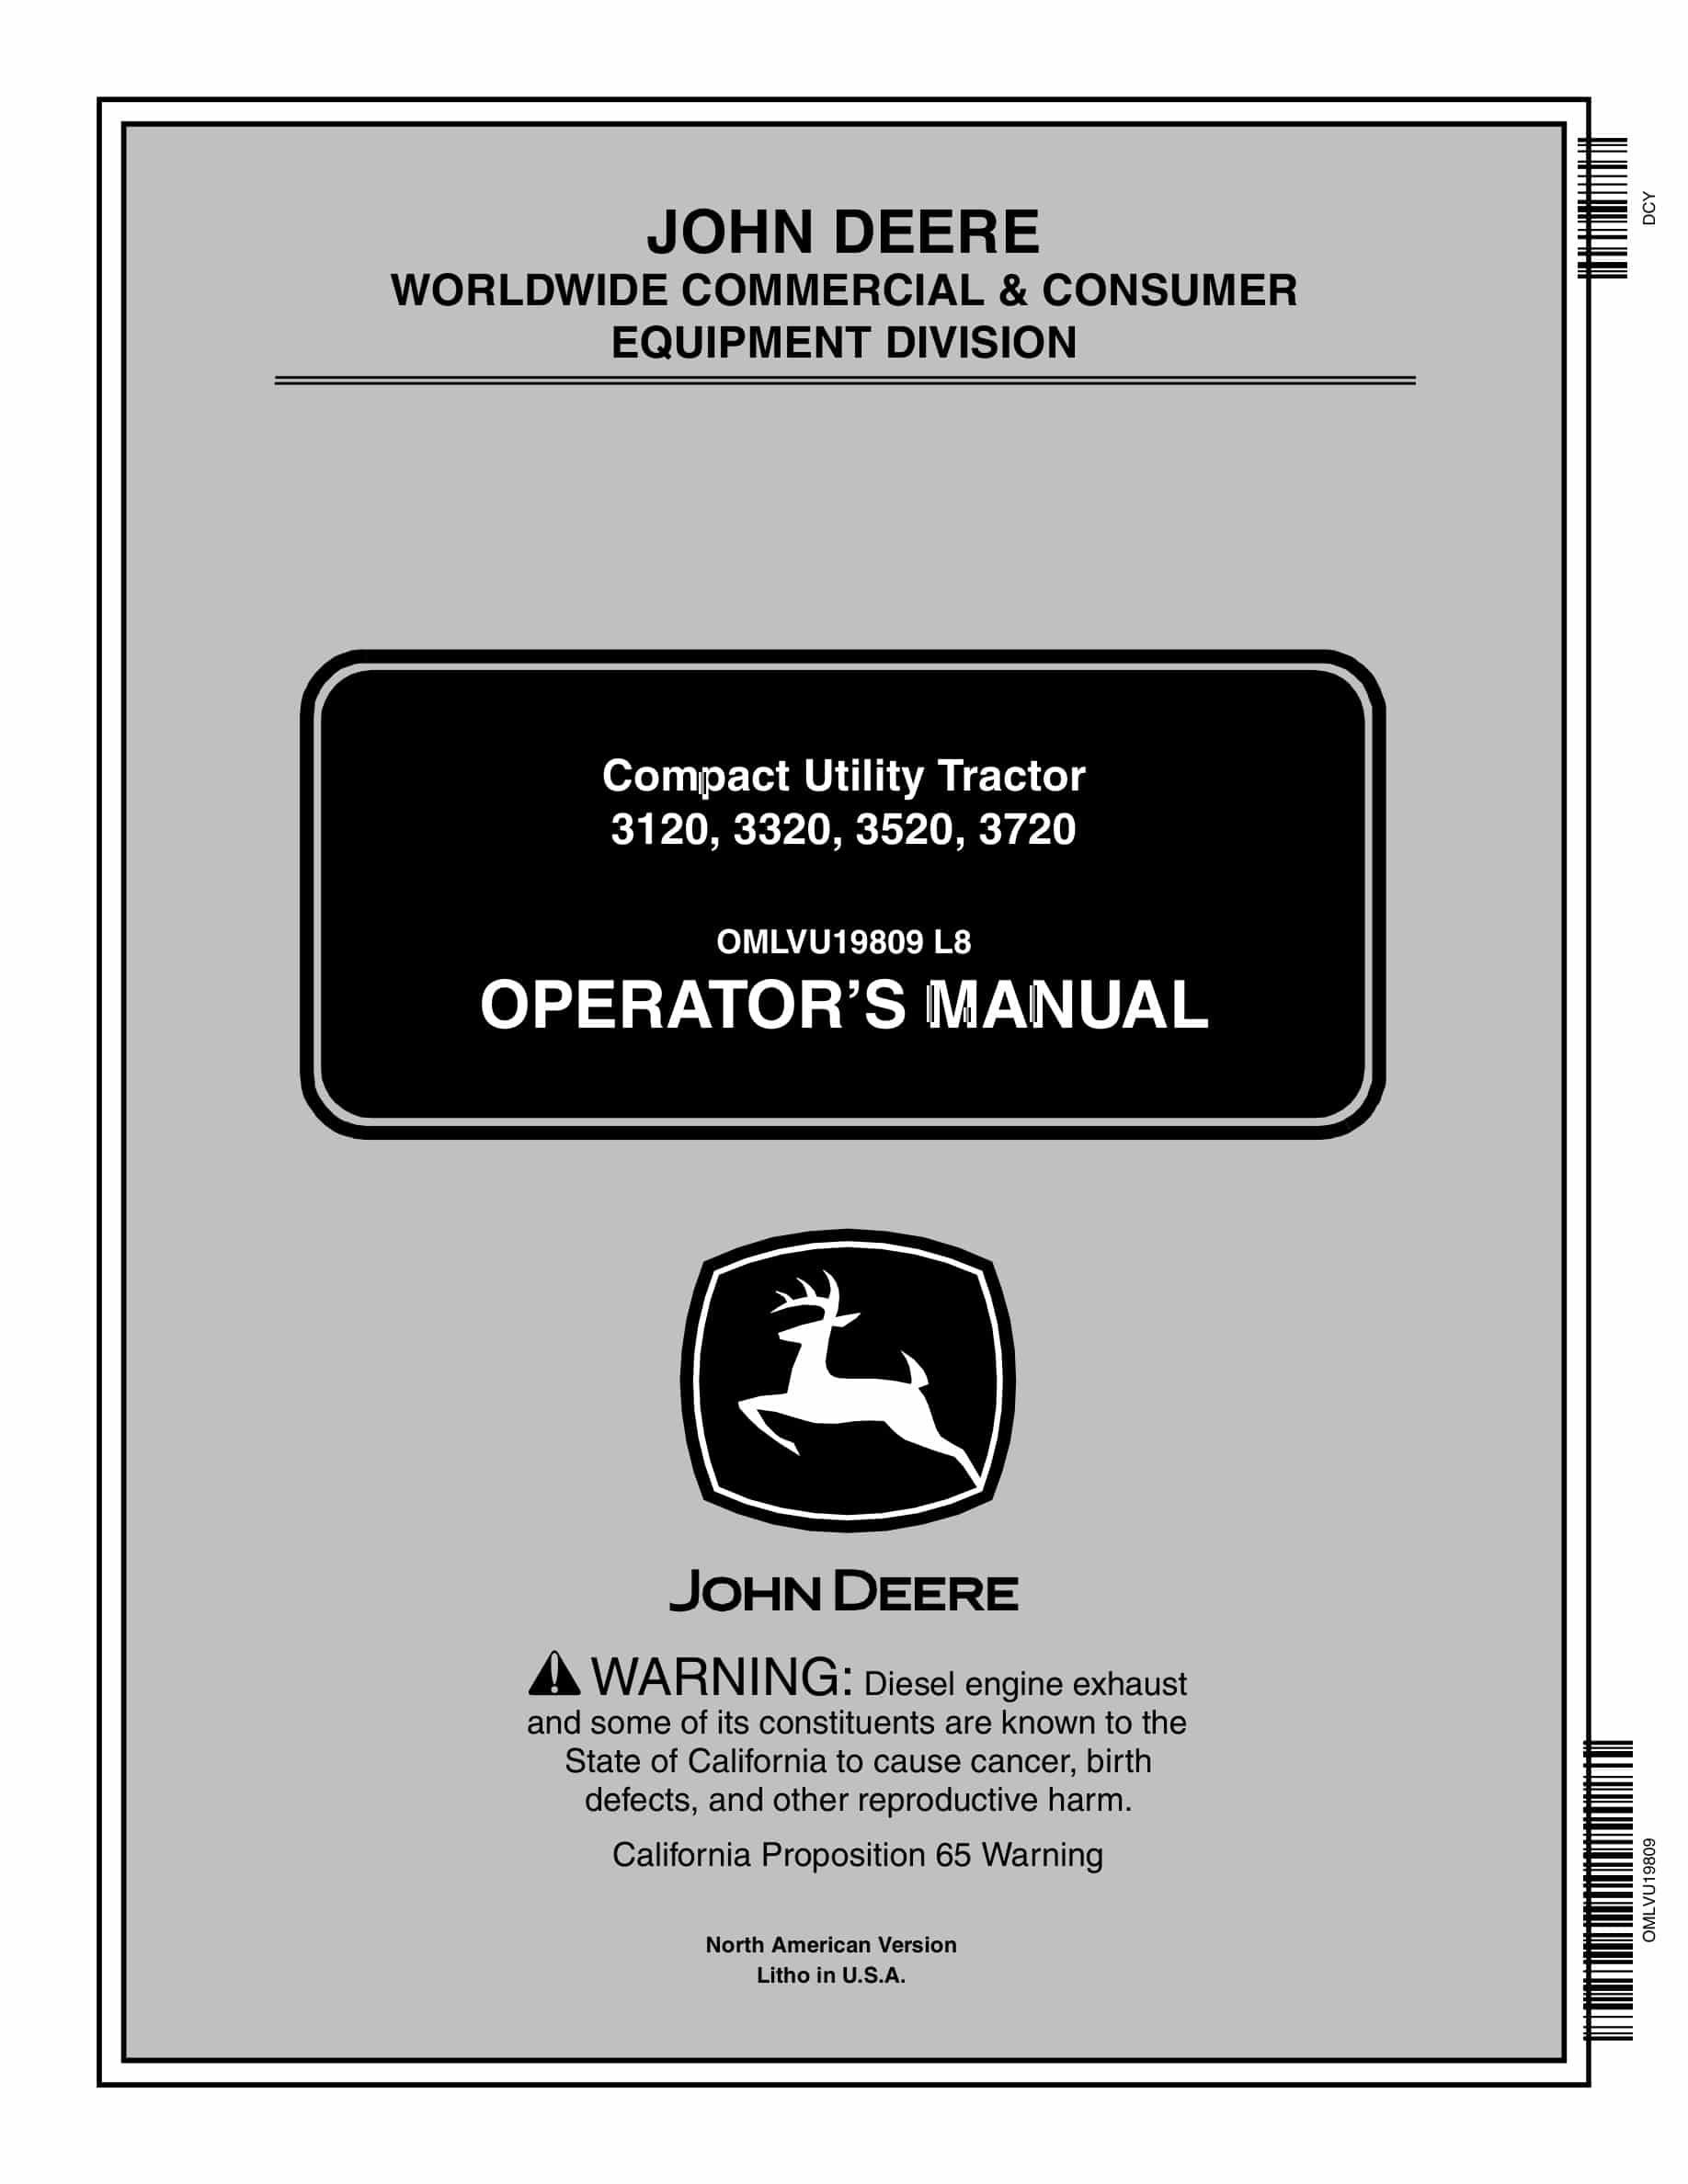 John Deere 3120, 3320, 3520, 3720 Tractor Operator Manual OMLVU19809-1